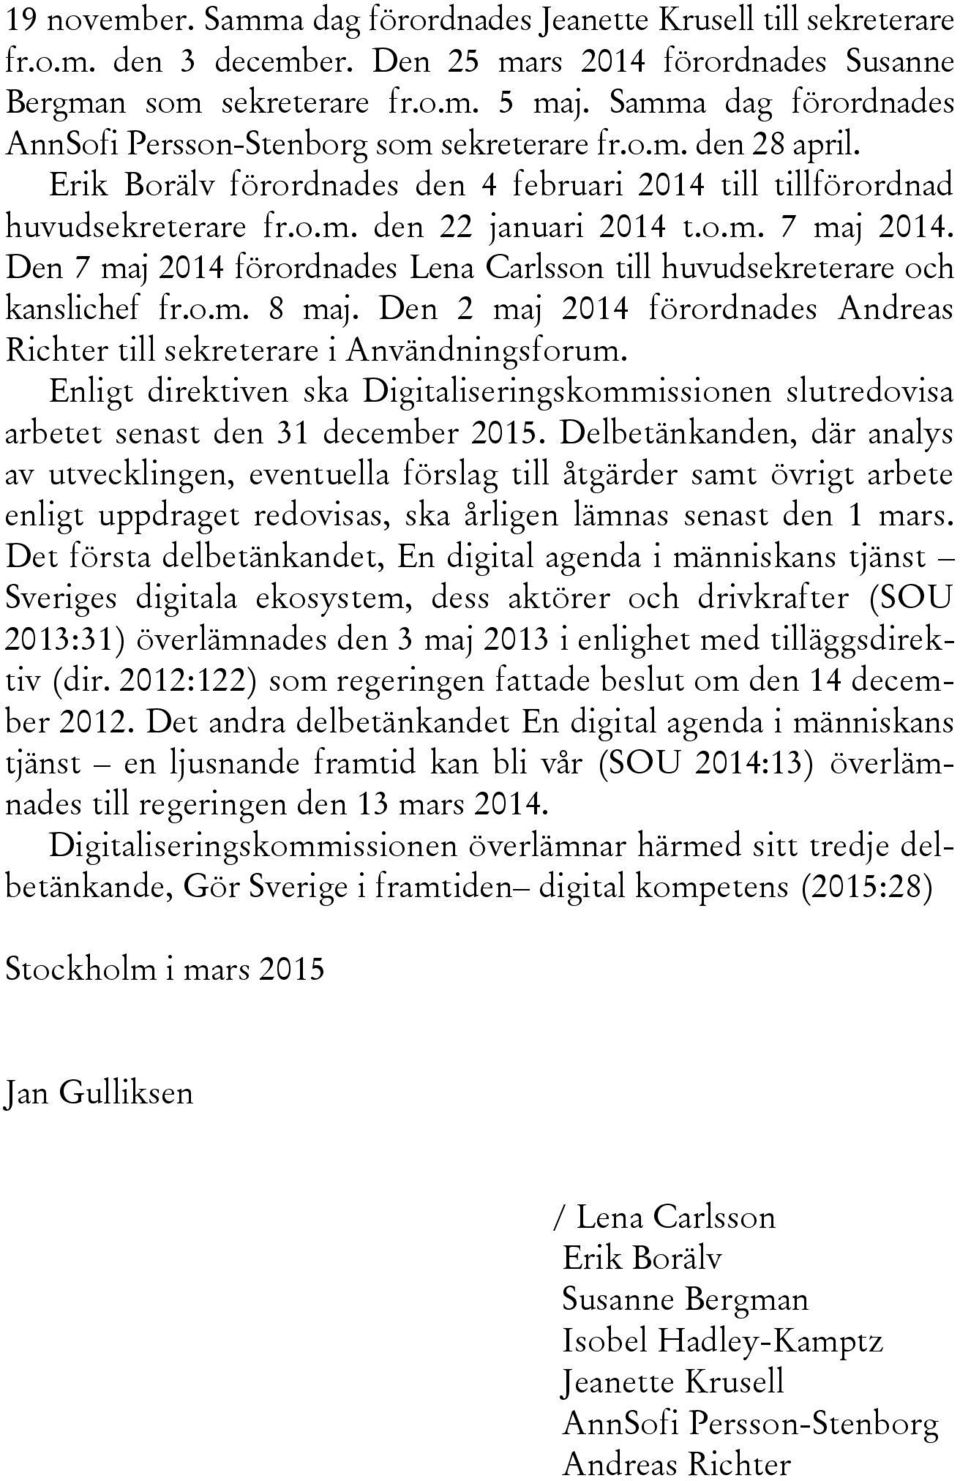 Den 7 maj 2014 förordnades Lena Carlsson till huvudsekreterare och kanslichef fr.o.m. 8 maj. Den 2 maj 2014 förordnades Andreas Richter till sekreterare i Användningsforum.